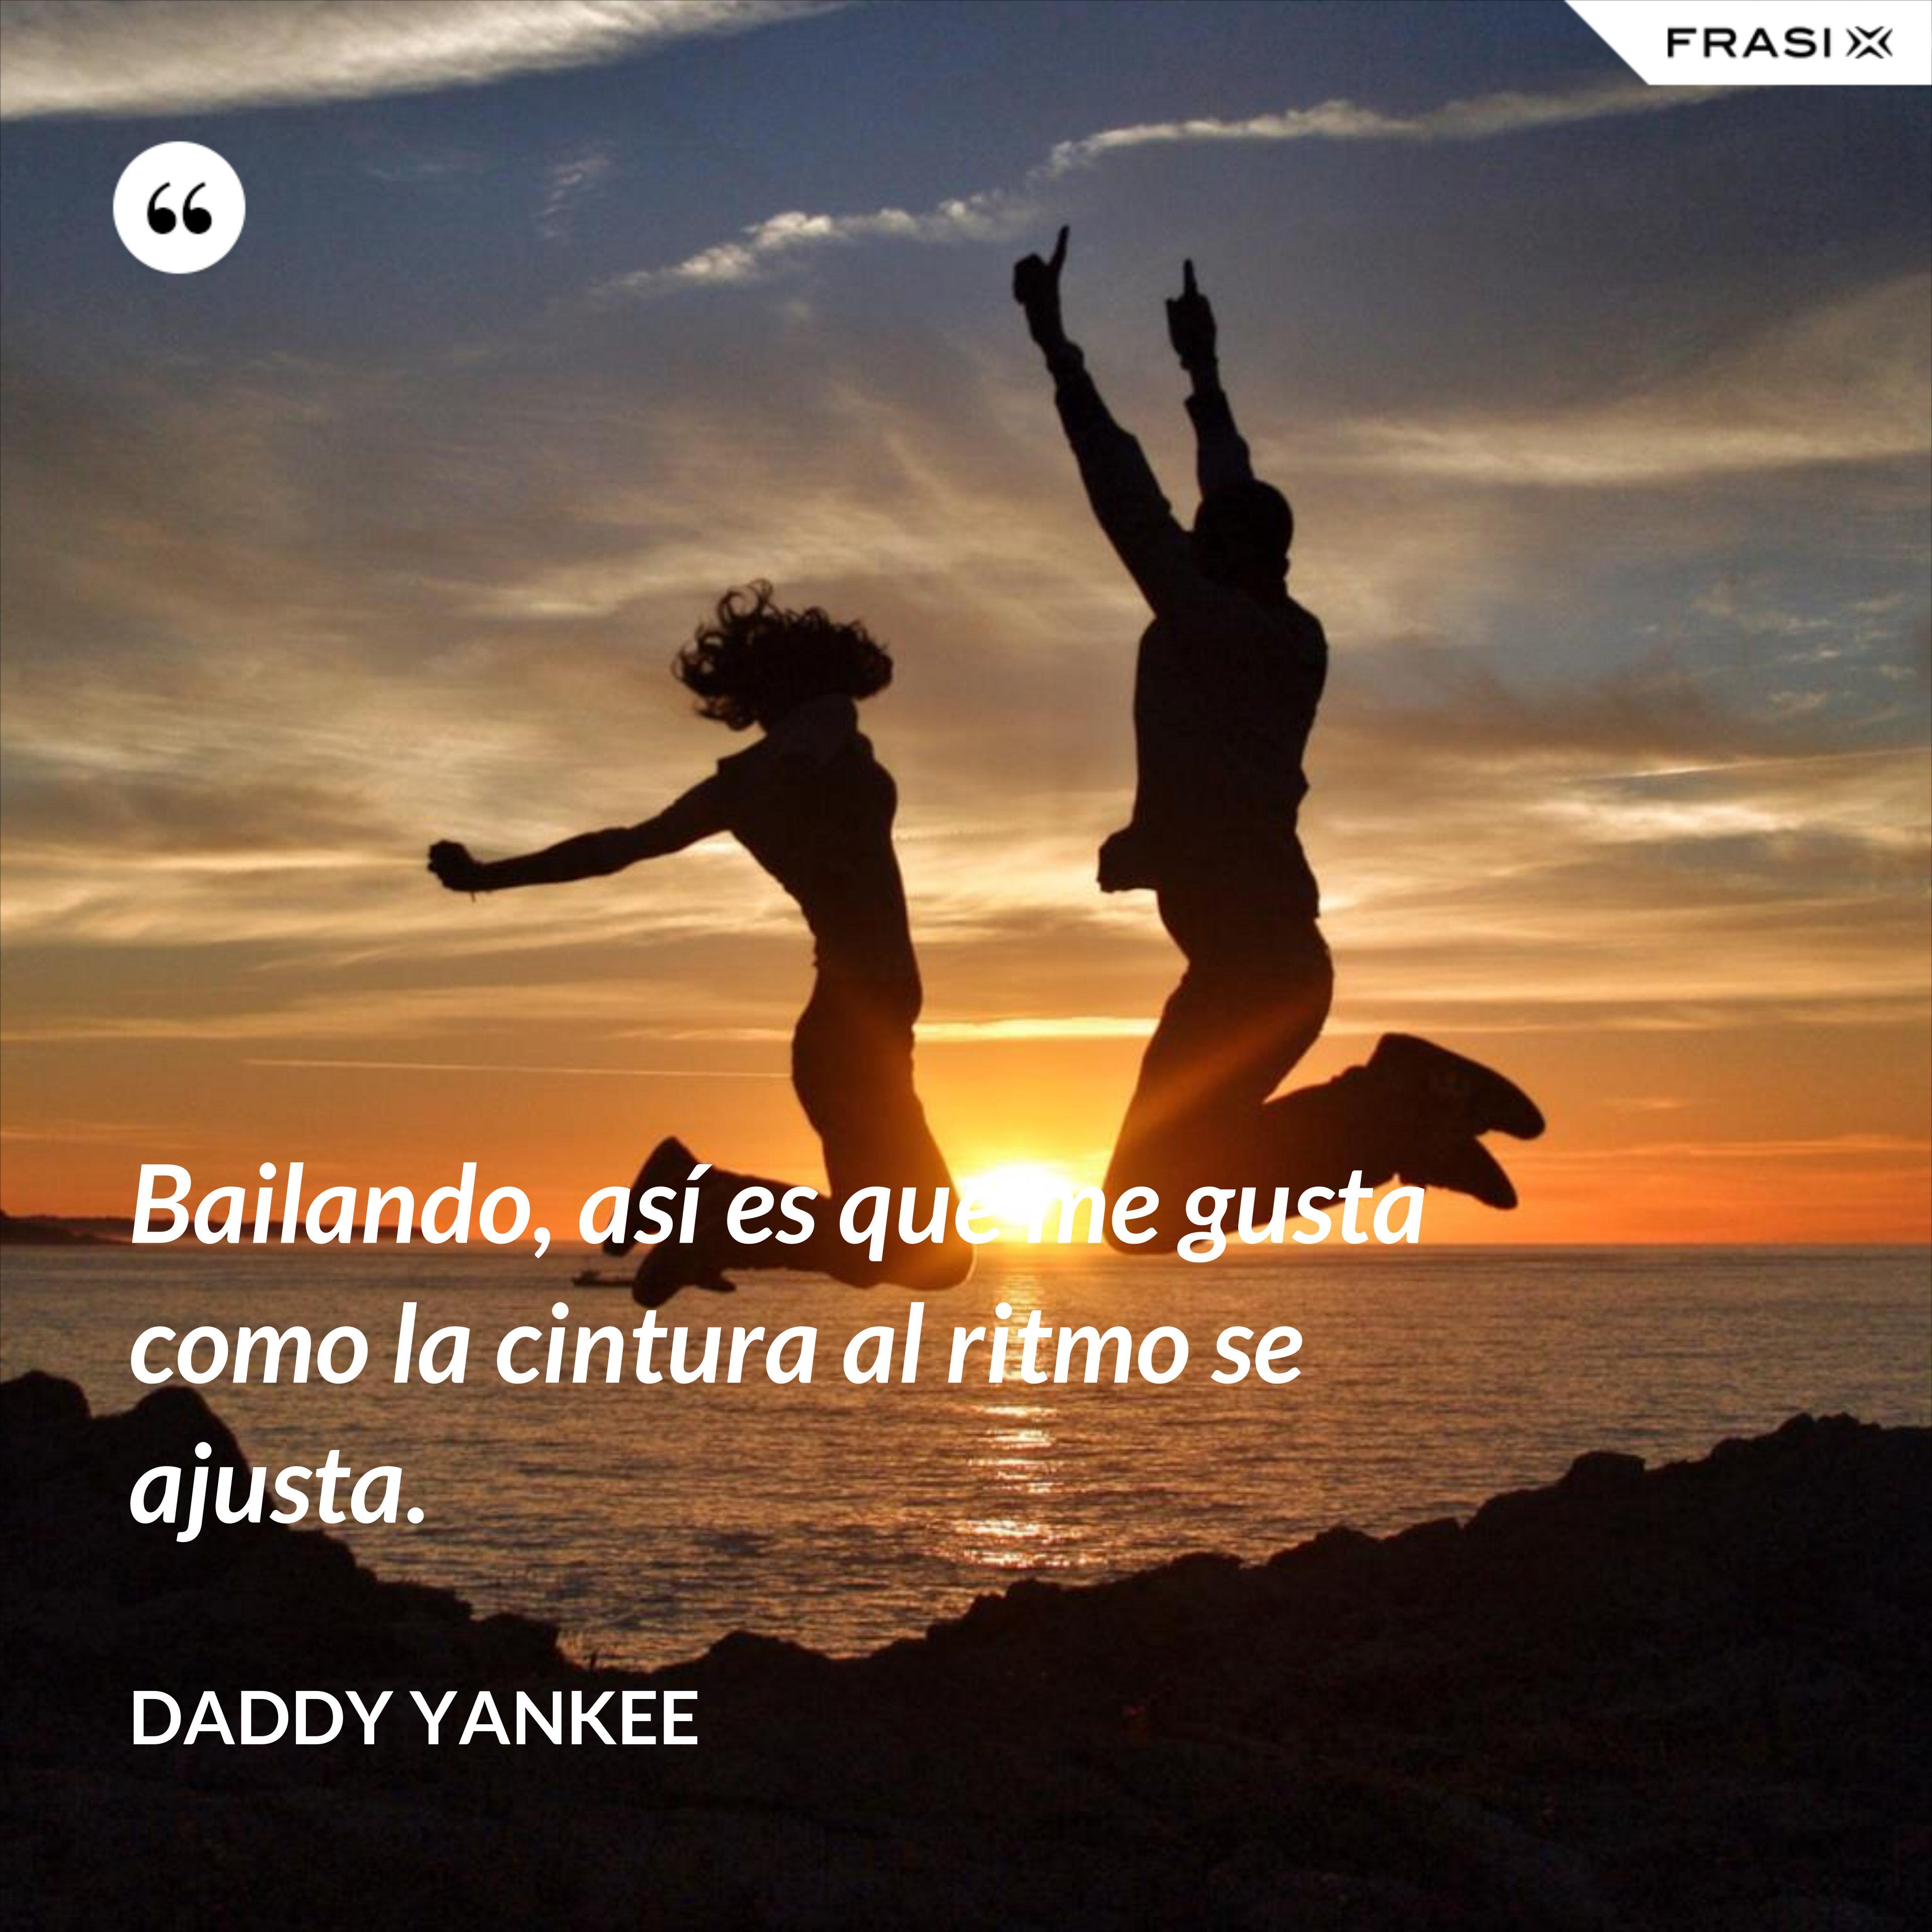 Bailando, así es que me gusta como la cintura al ritmo se ajusta. - Daddy Yankee